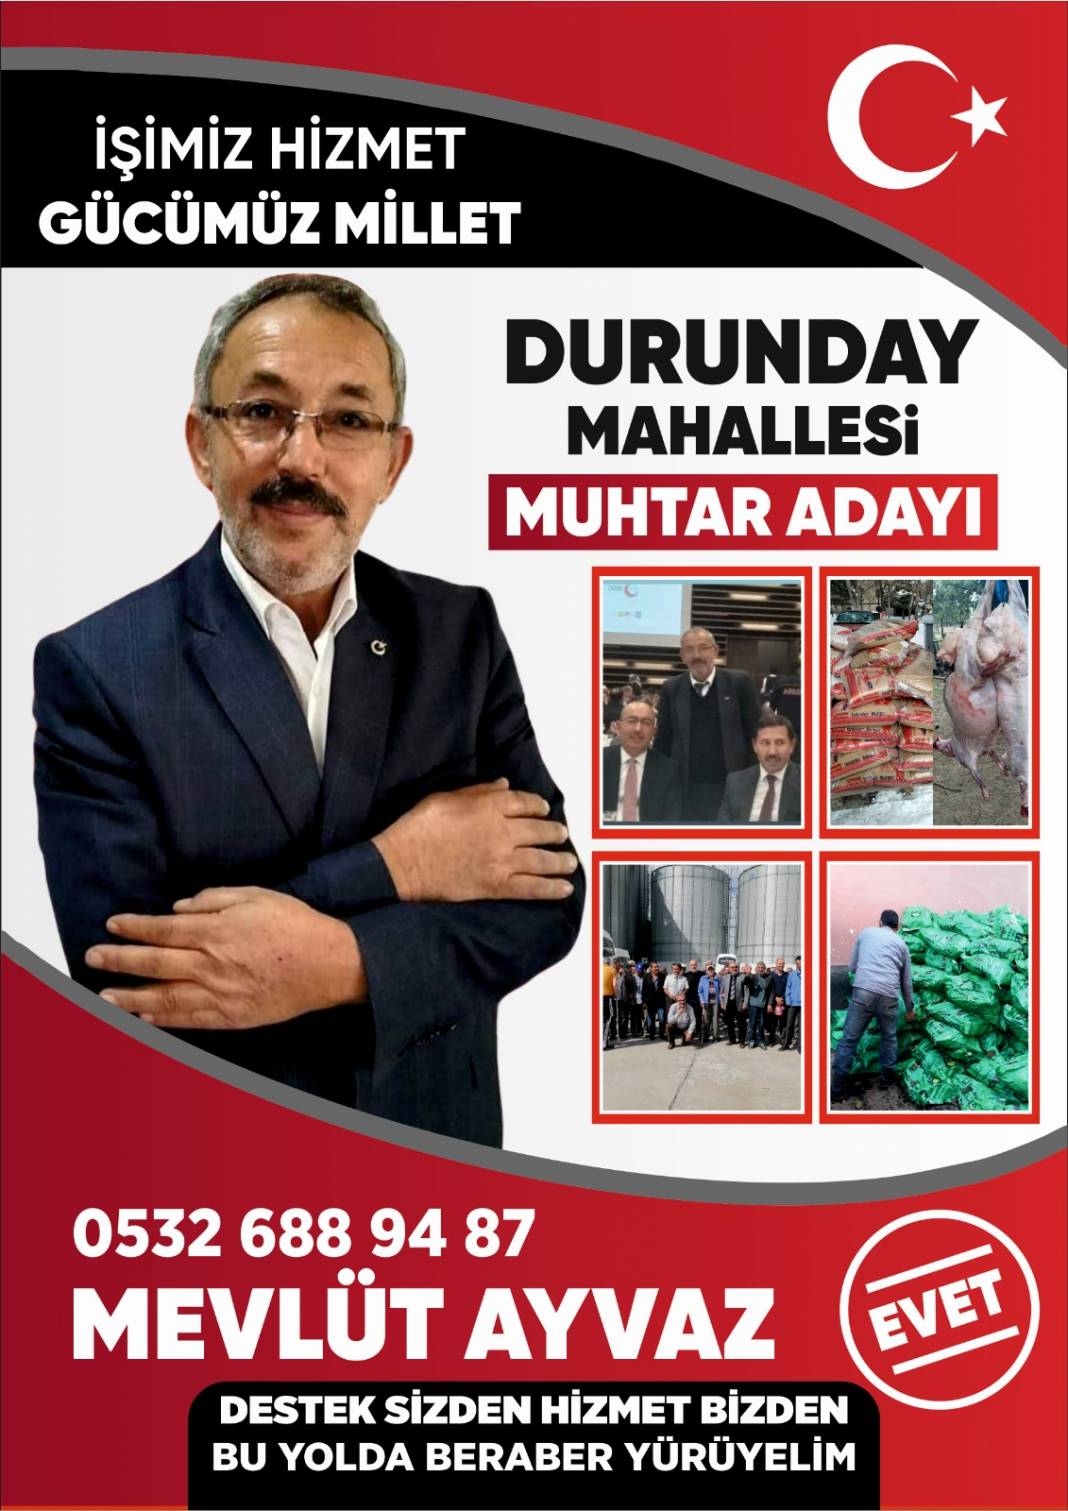 Konya’nın muhtar adayları Haber Dairesi’nde 68